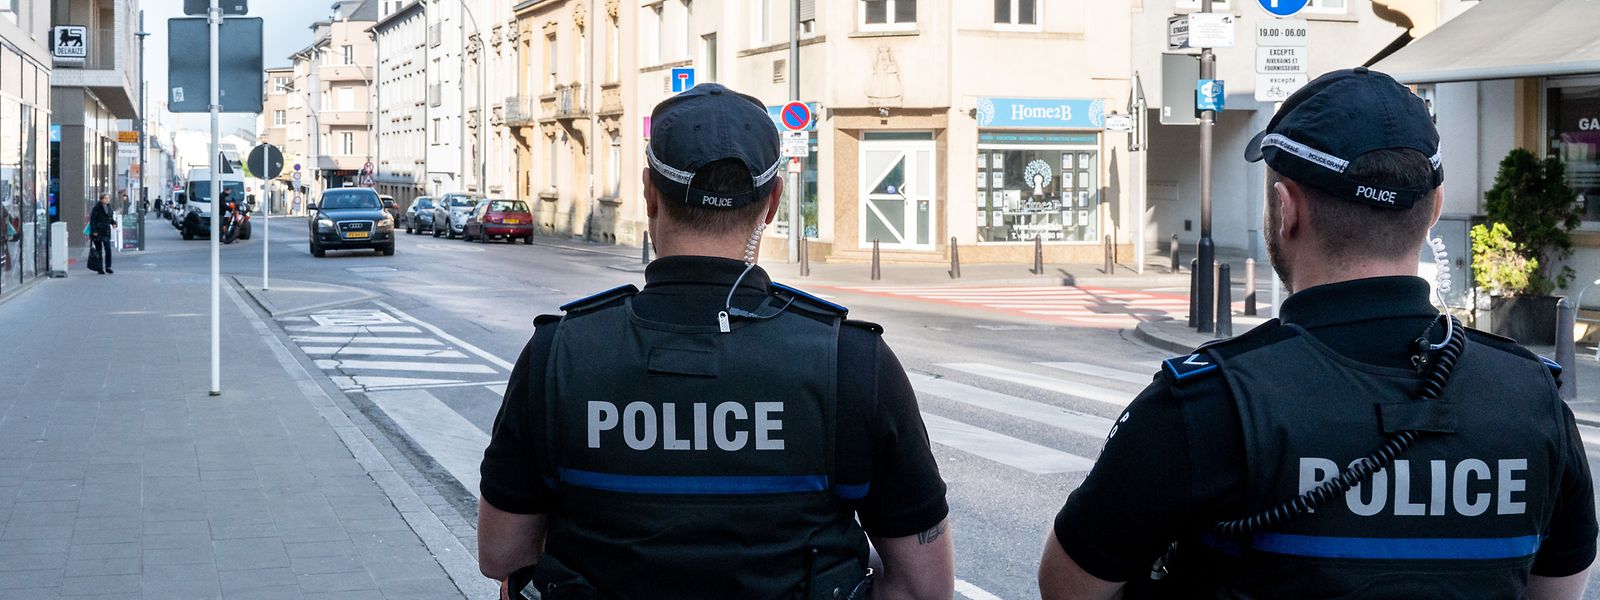 La police a réagi en renforçant sa présence à l'arrivée des Bandidos dans le quartier de la gare. 